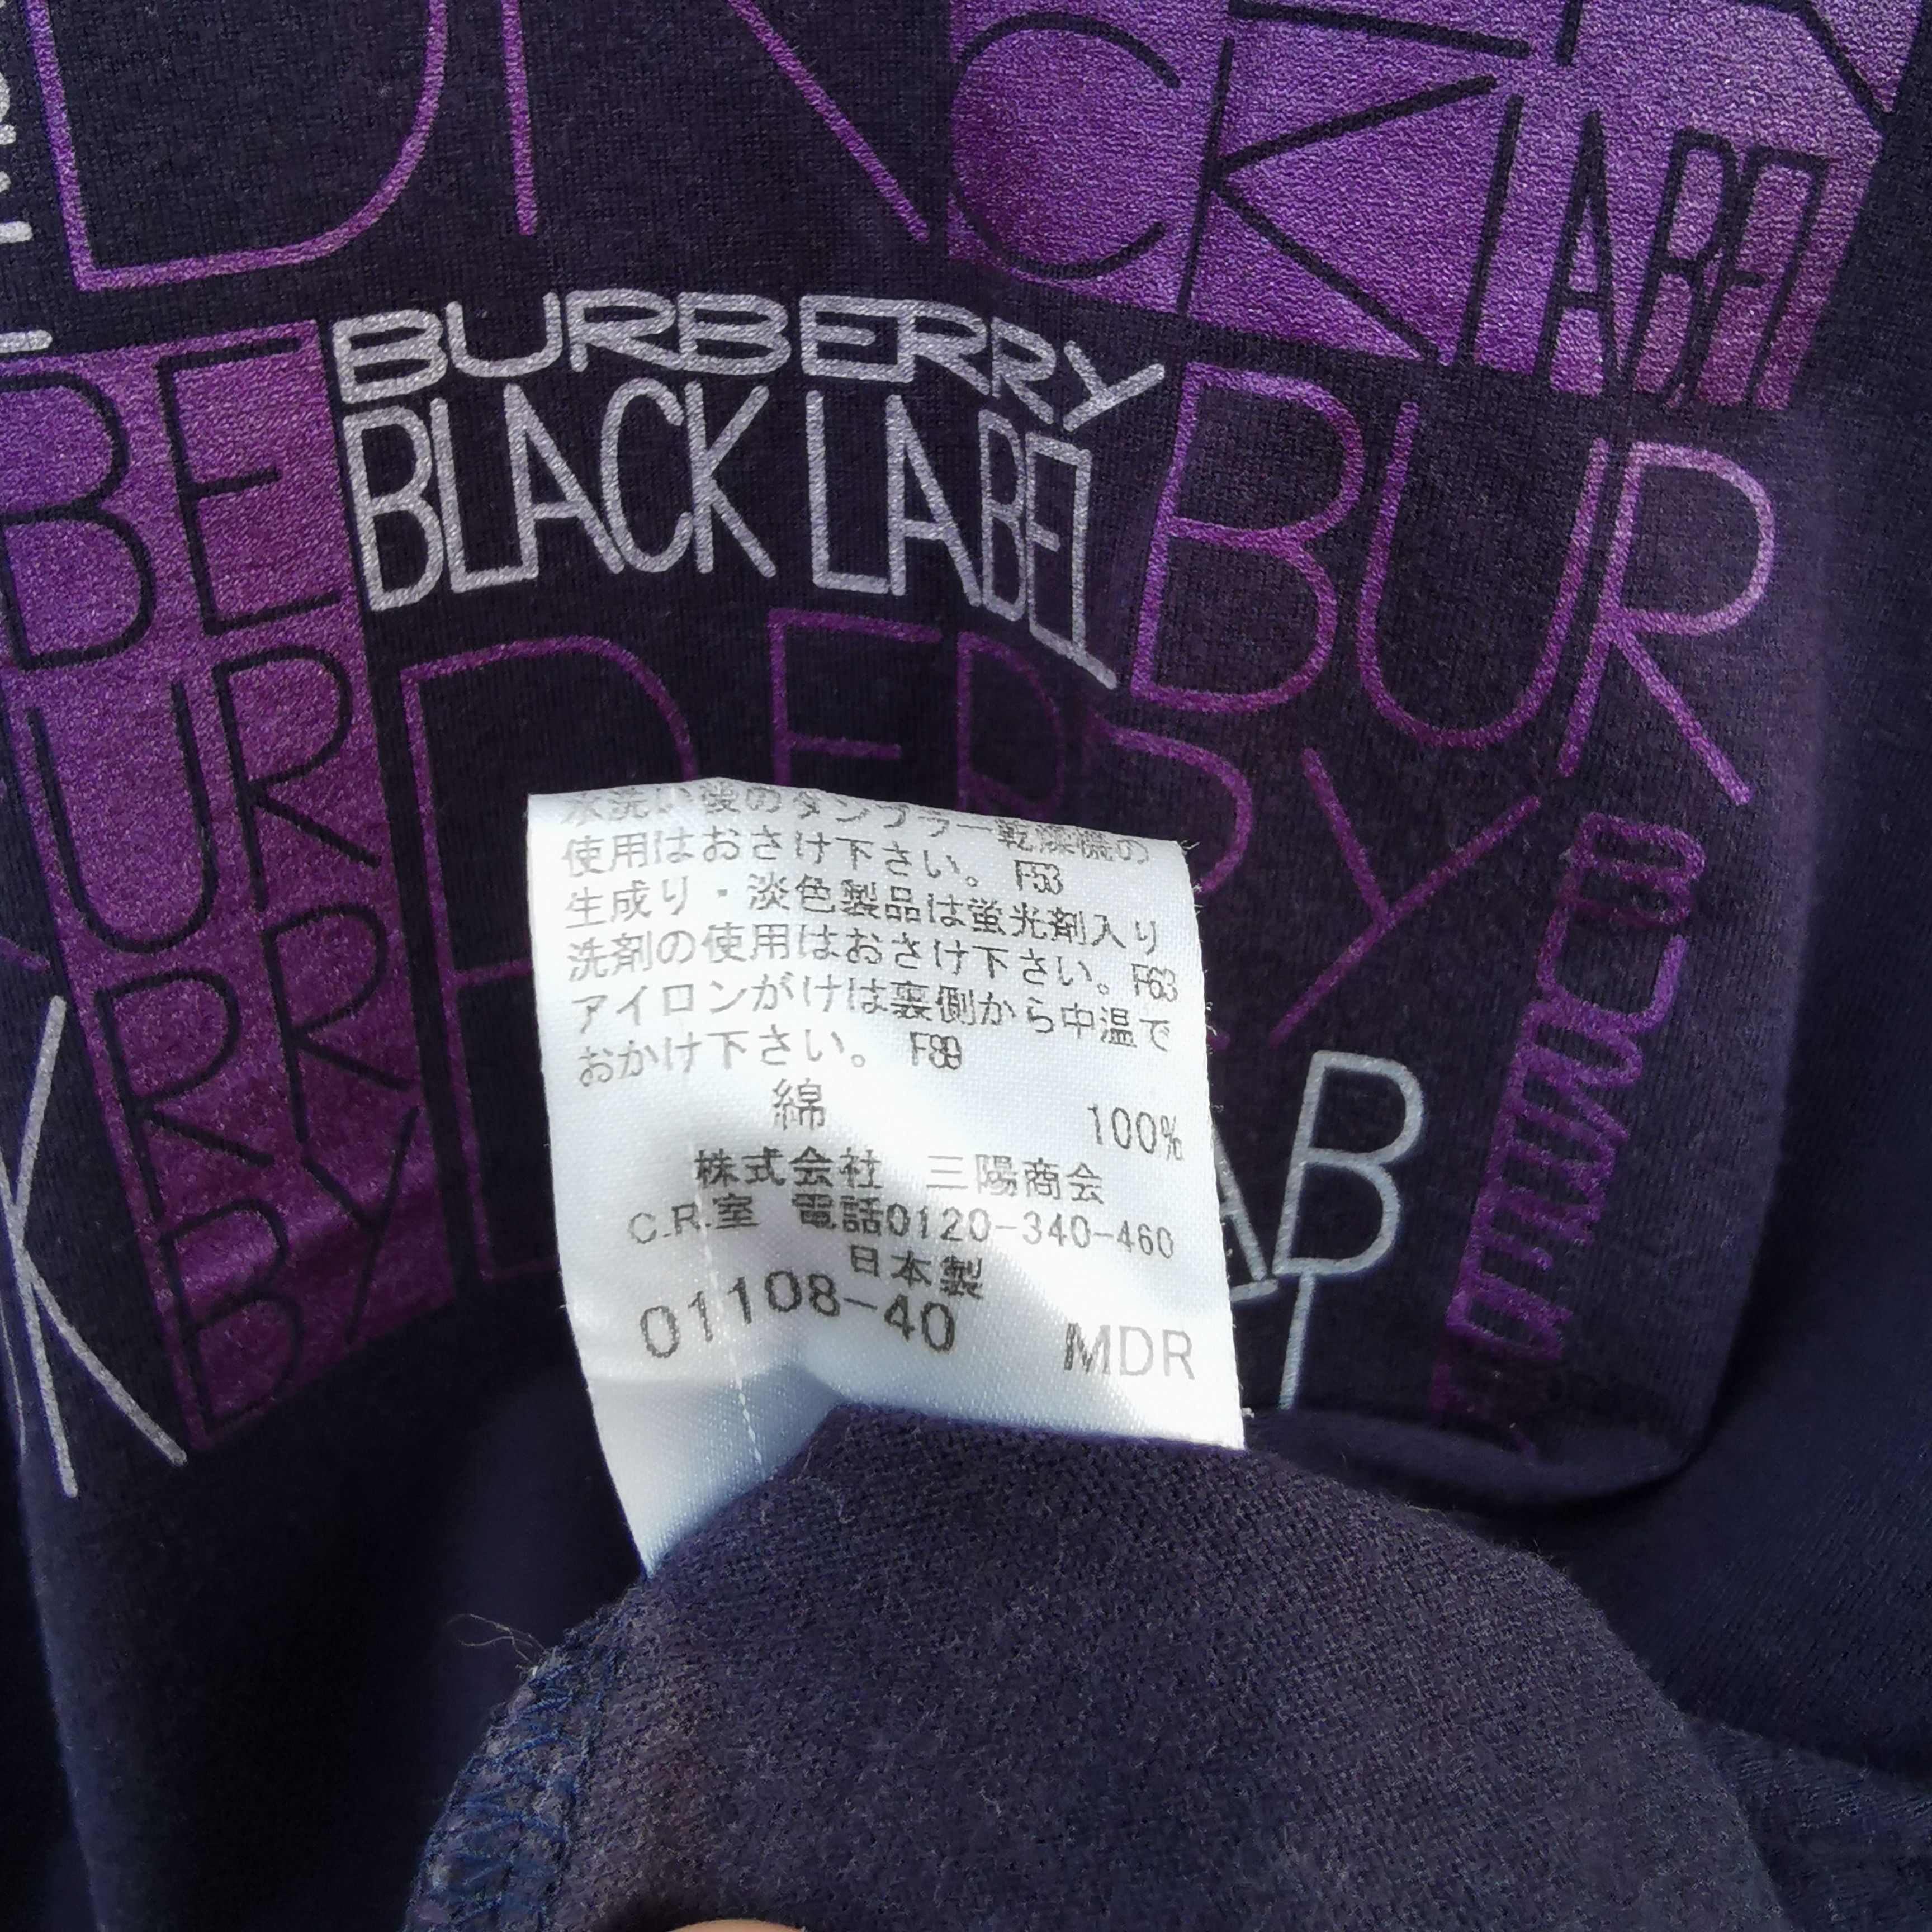 Burberry Black Label Tshirt - 4